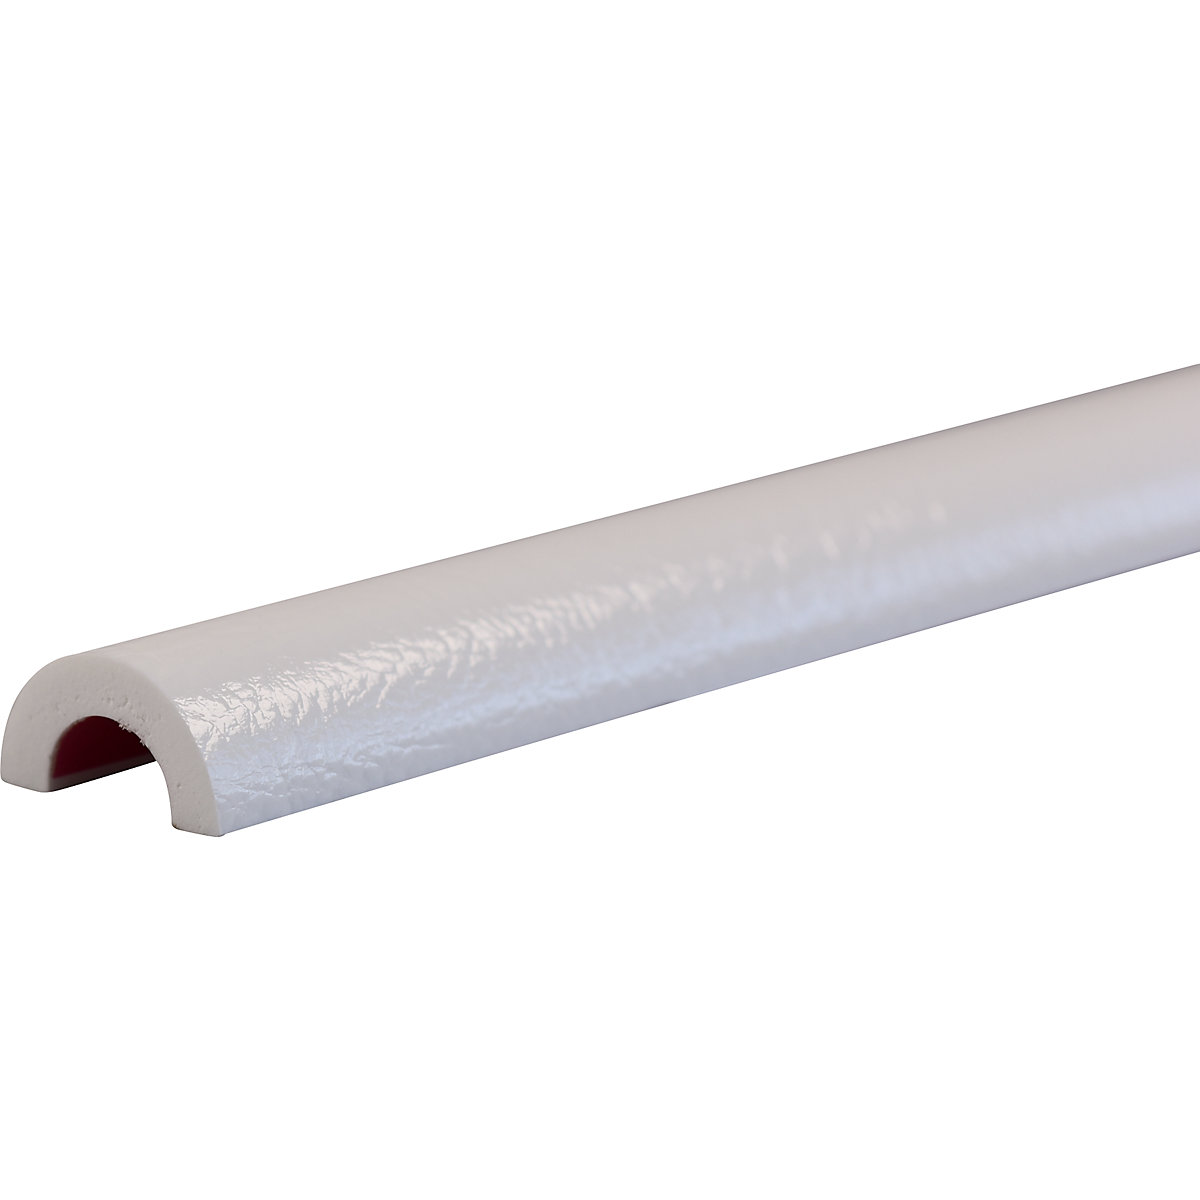 Protection des tuyaux Knuffi® – SHG, type R30, 1 rouleau de 50 m, blanc